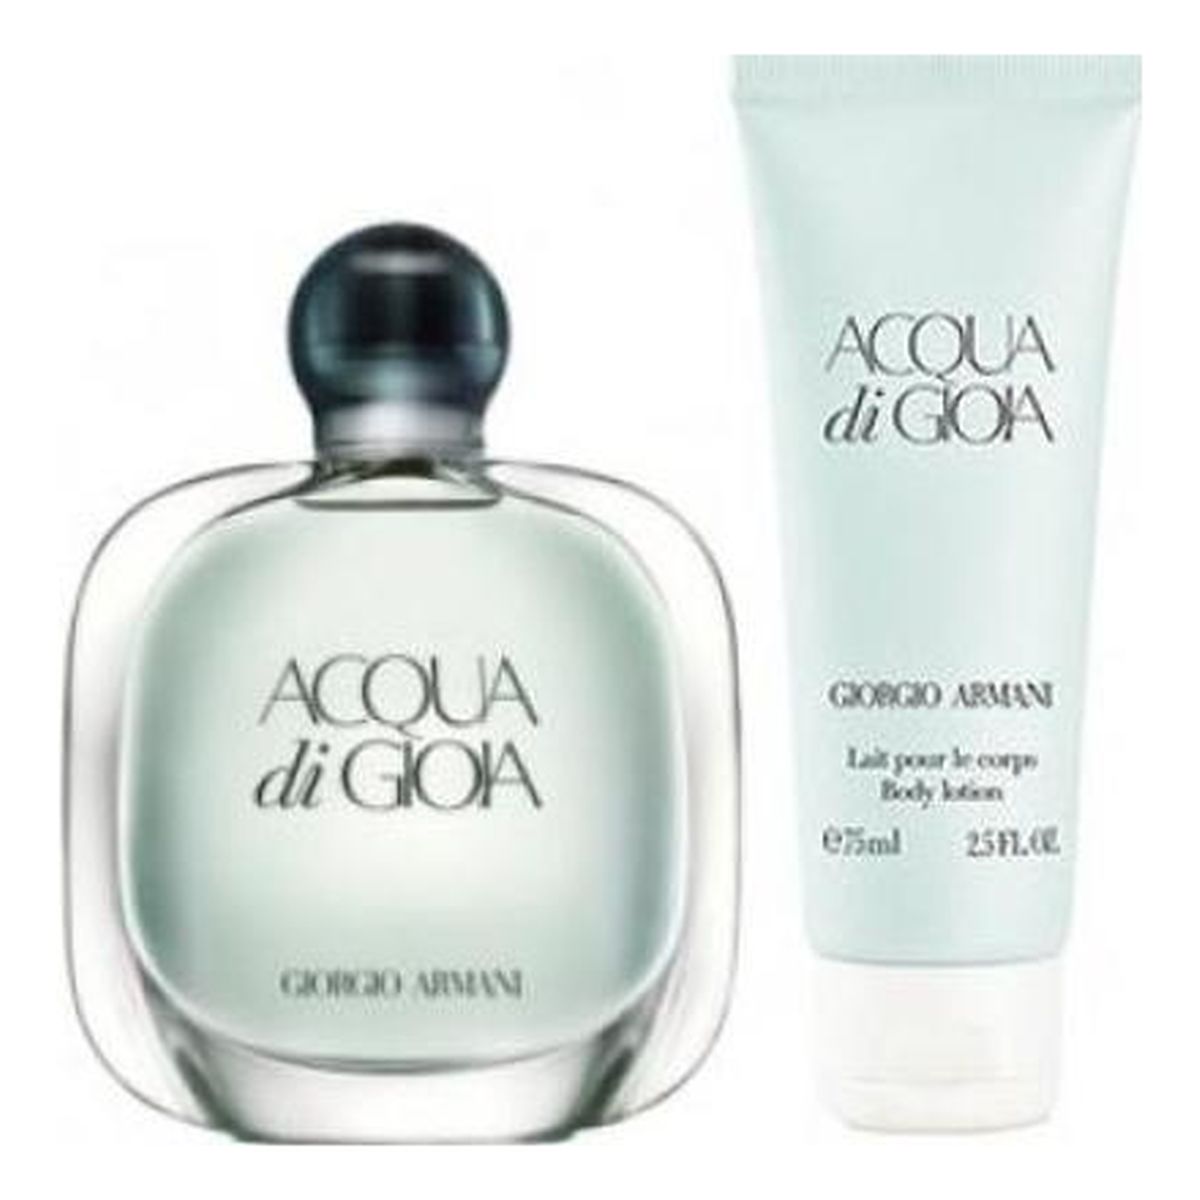 Giorgio Armani Acqua di Gioia Zestaw dla kobiet Woda perfumowana + Balsam do ciała